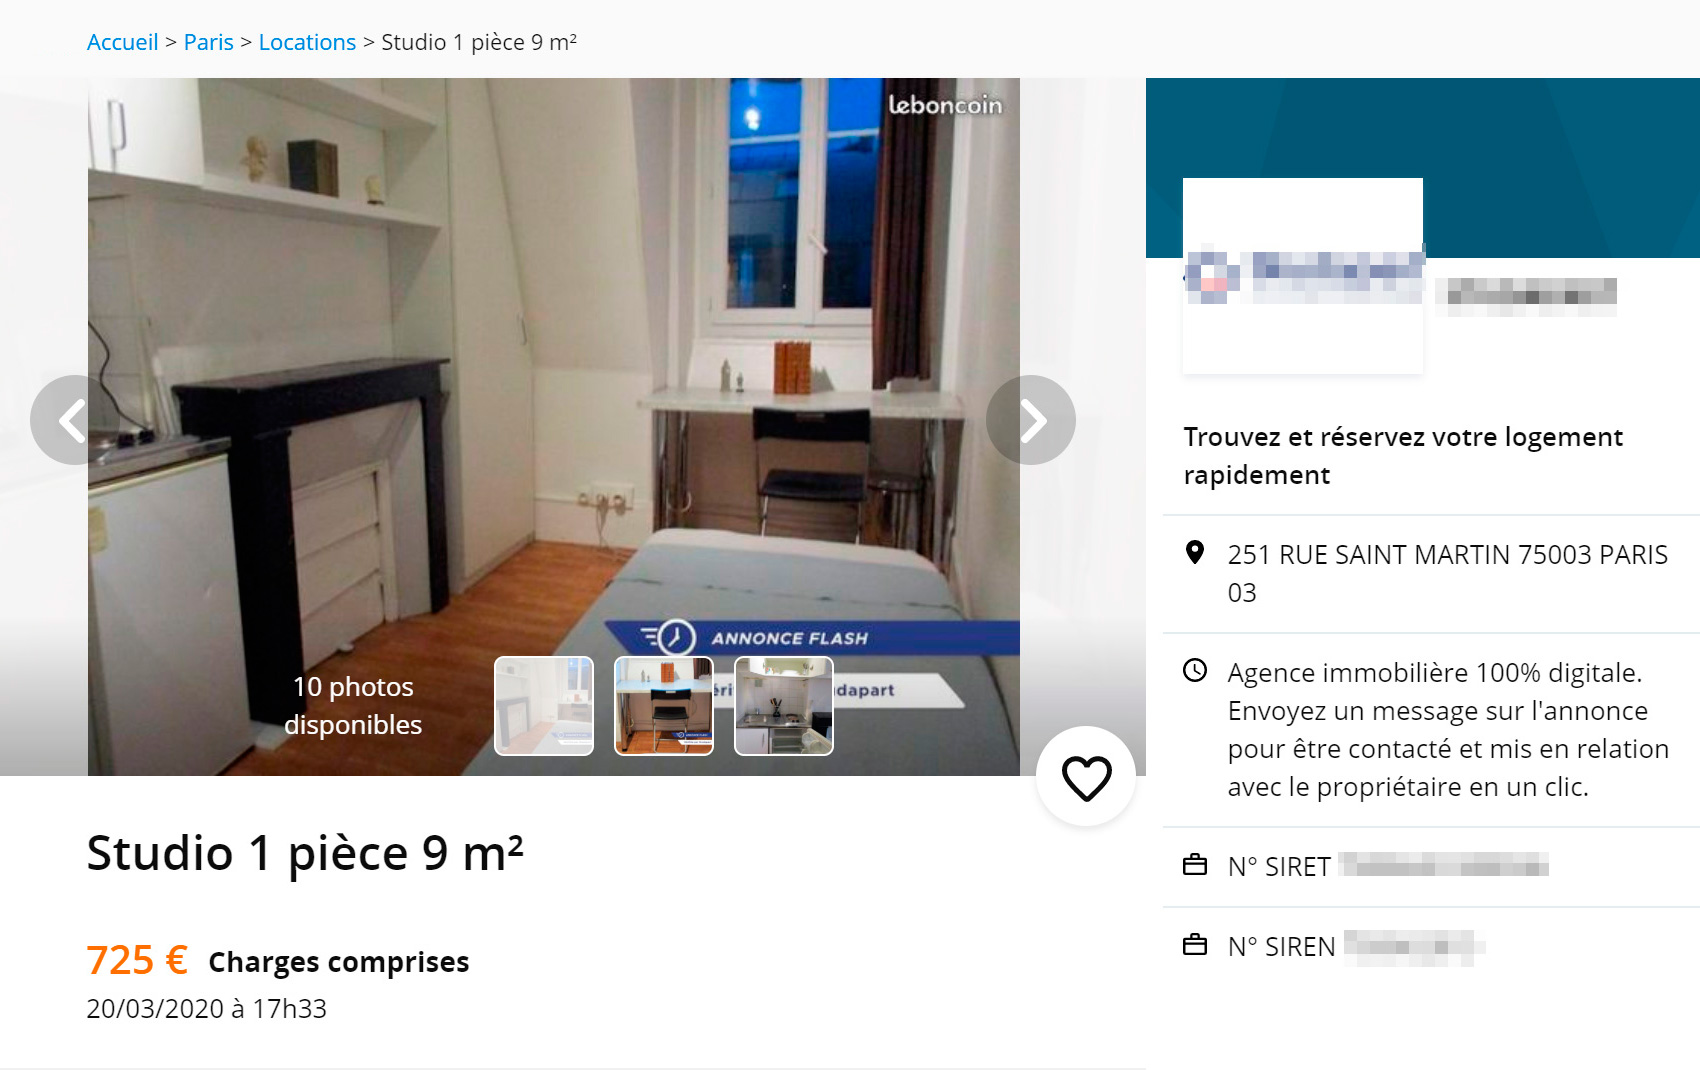 Комната размером 9 м²: с одной стороны кровать, с другой — кухня. За 560 € (48 860 ₽) в месяц. Зато в центре Парижа!